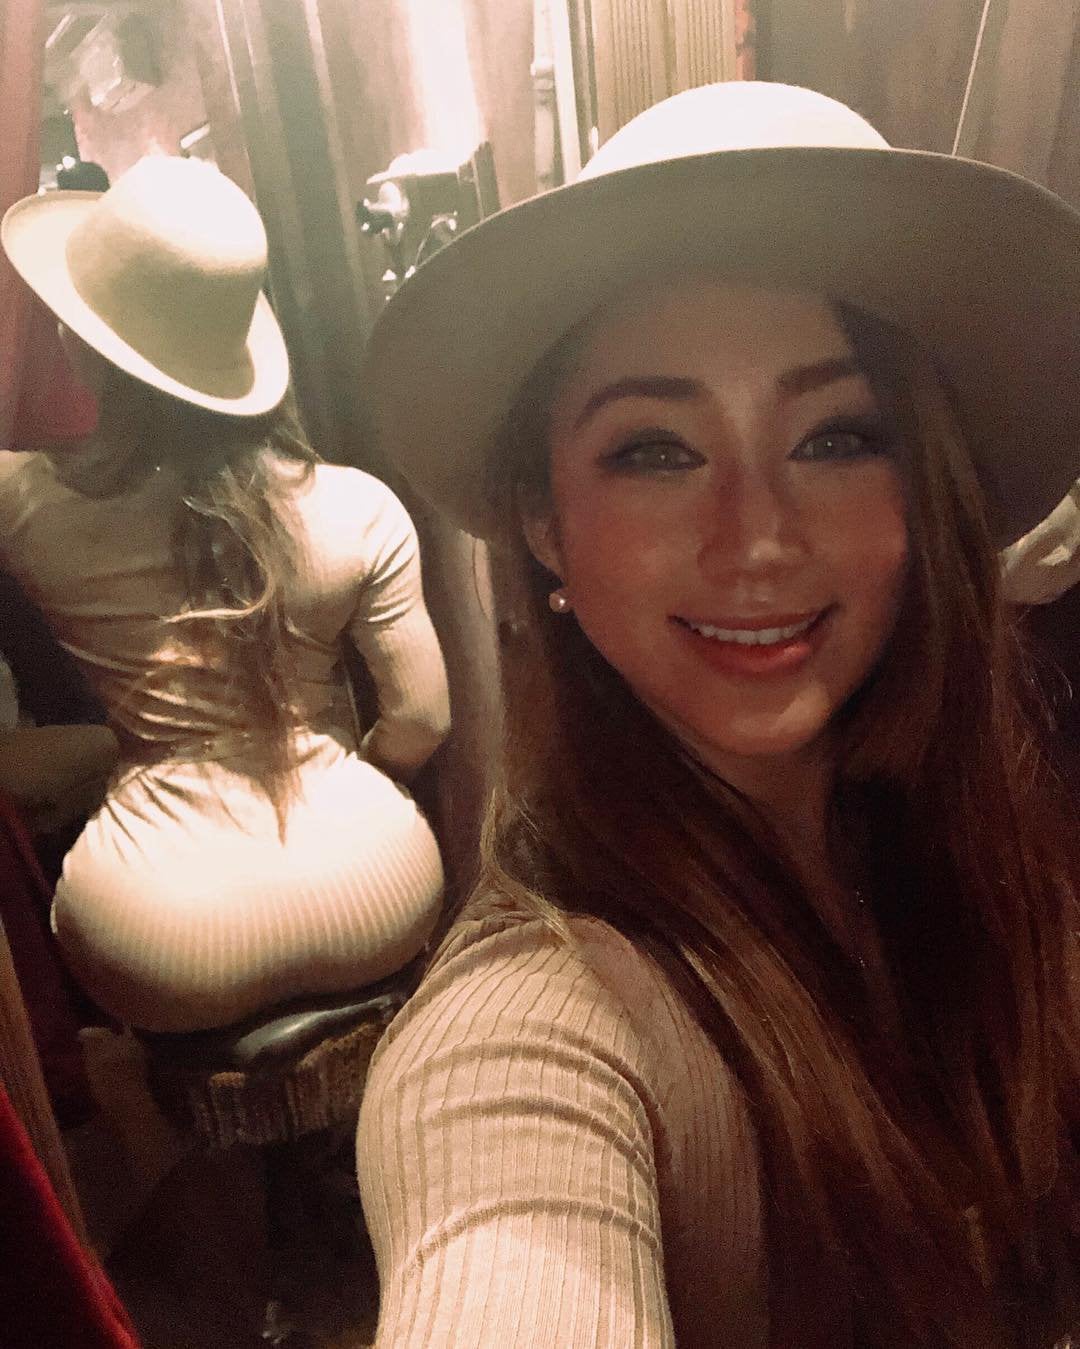 Asian chick got that ass